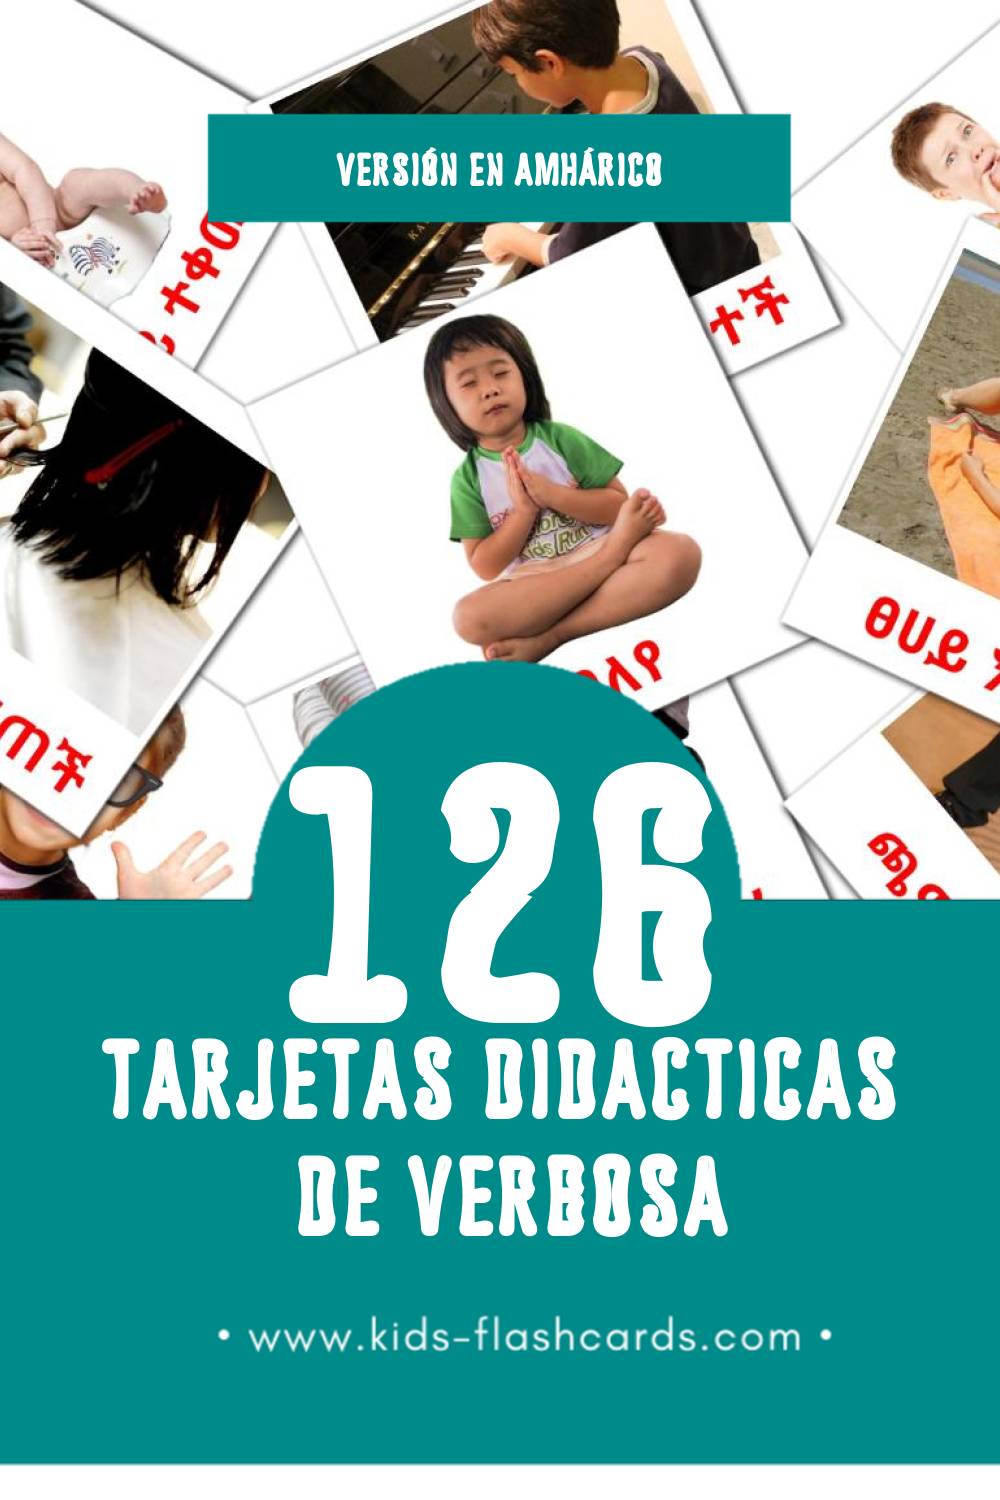 Tarjetas visuales de ግሦች para niños pequeños (126 tarjetas en Amhárico)